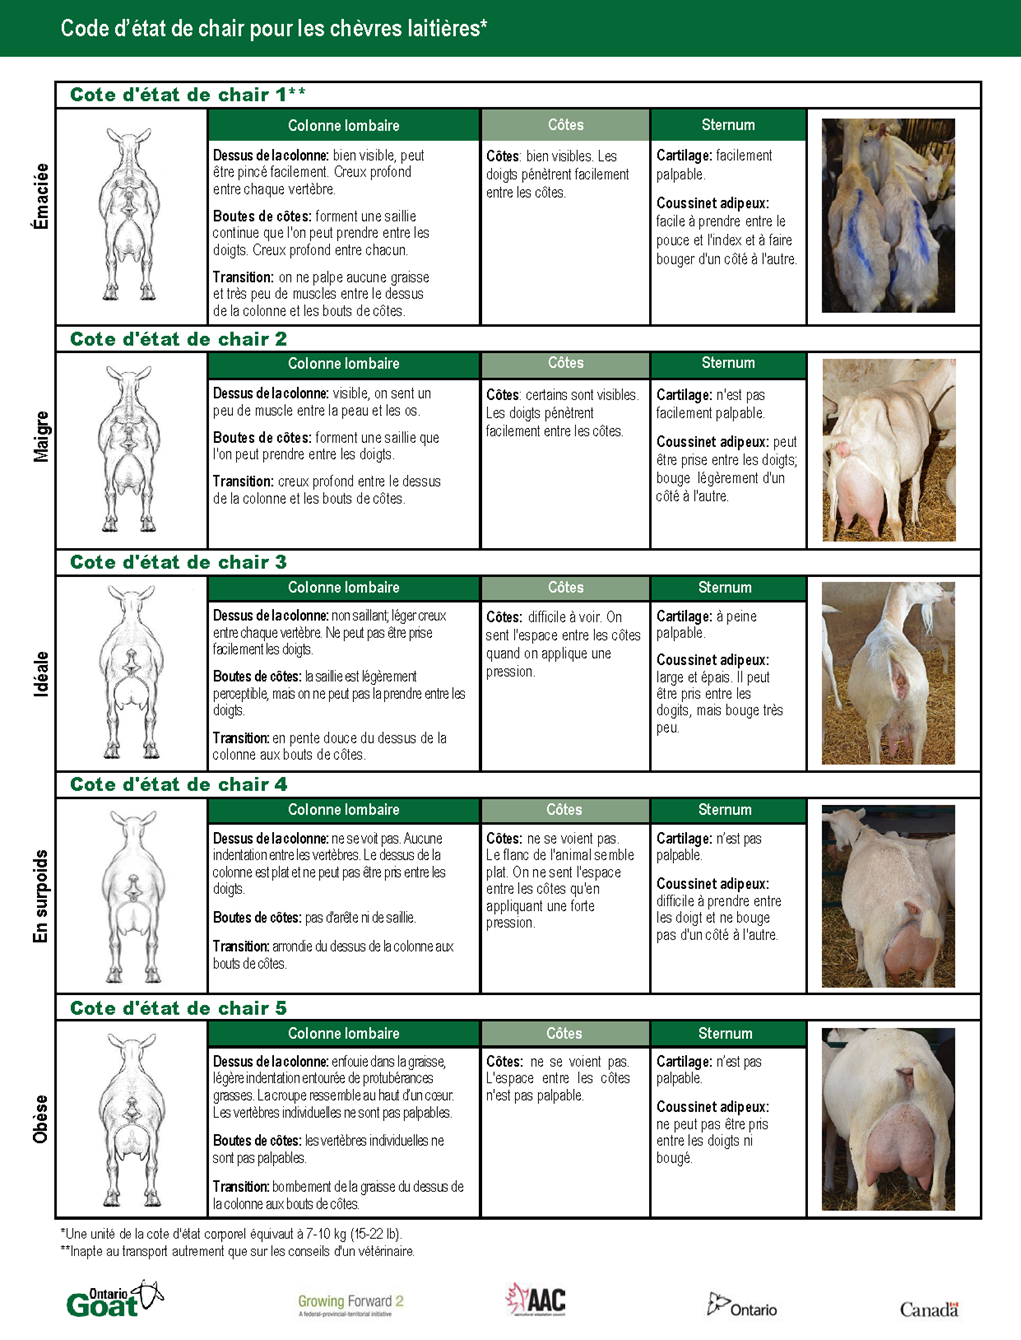 Signes de chasse et caractéristiques de l'accouplement chez les chèvres